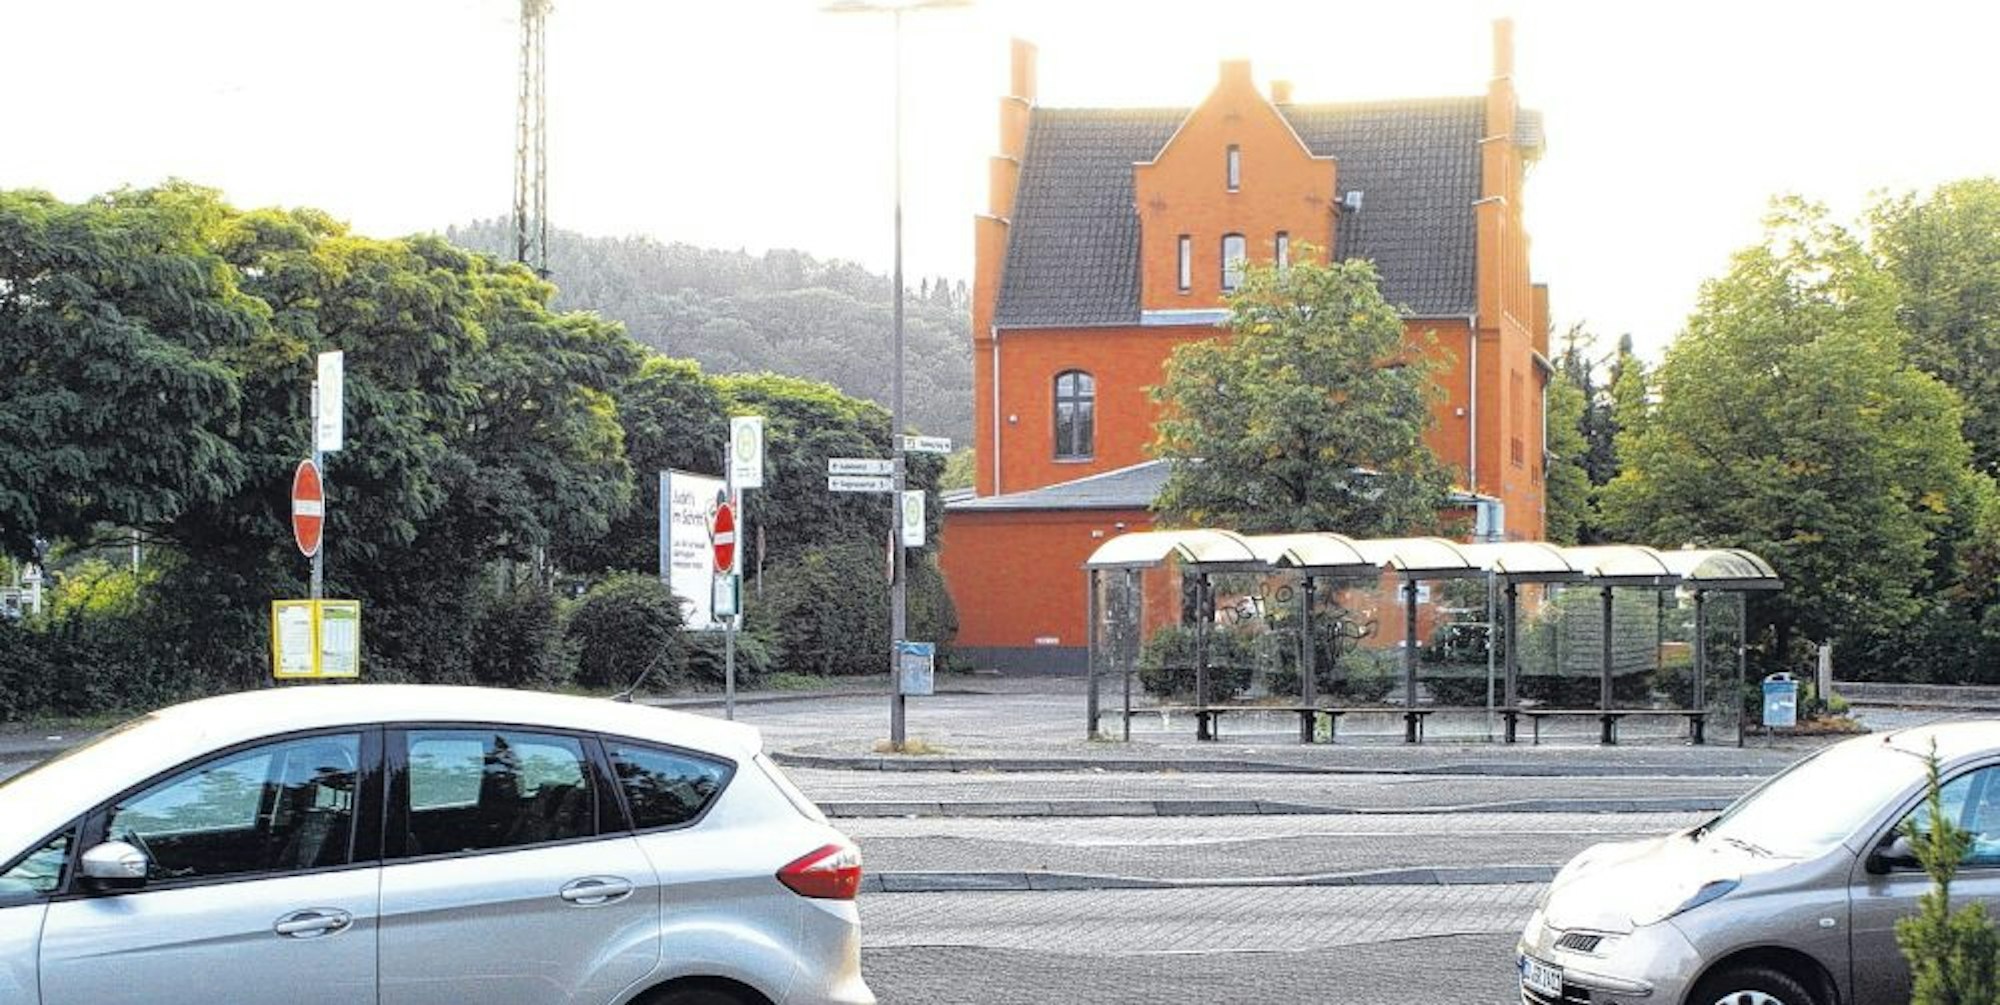 Der Busbahnhof wechselt seinen Standort, die Fläche wird für Taxis, Carsharing-Plätze und eine E-Auto-Ladestation genutzt.